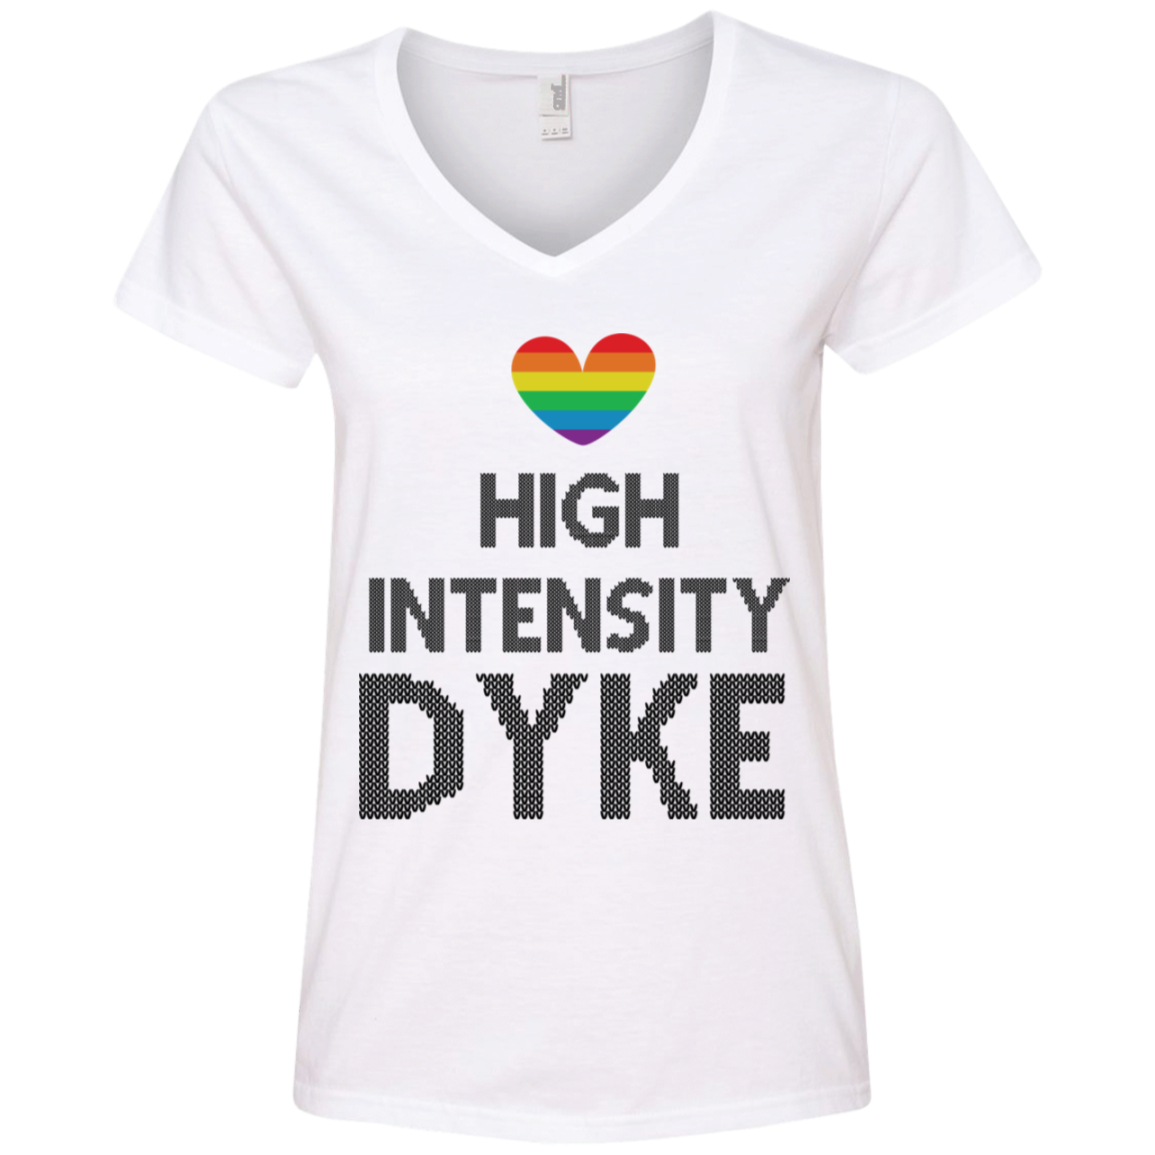 High Intensity Dyke Pride T-Shirt, Hoodie, Tank Top